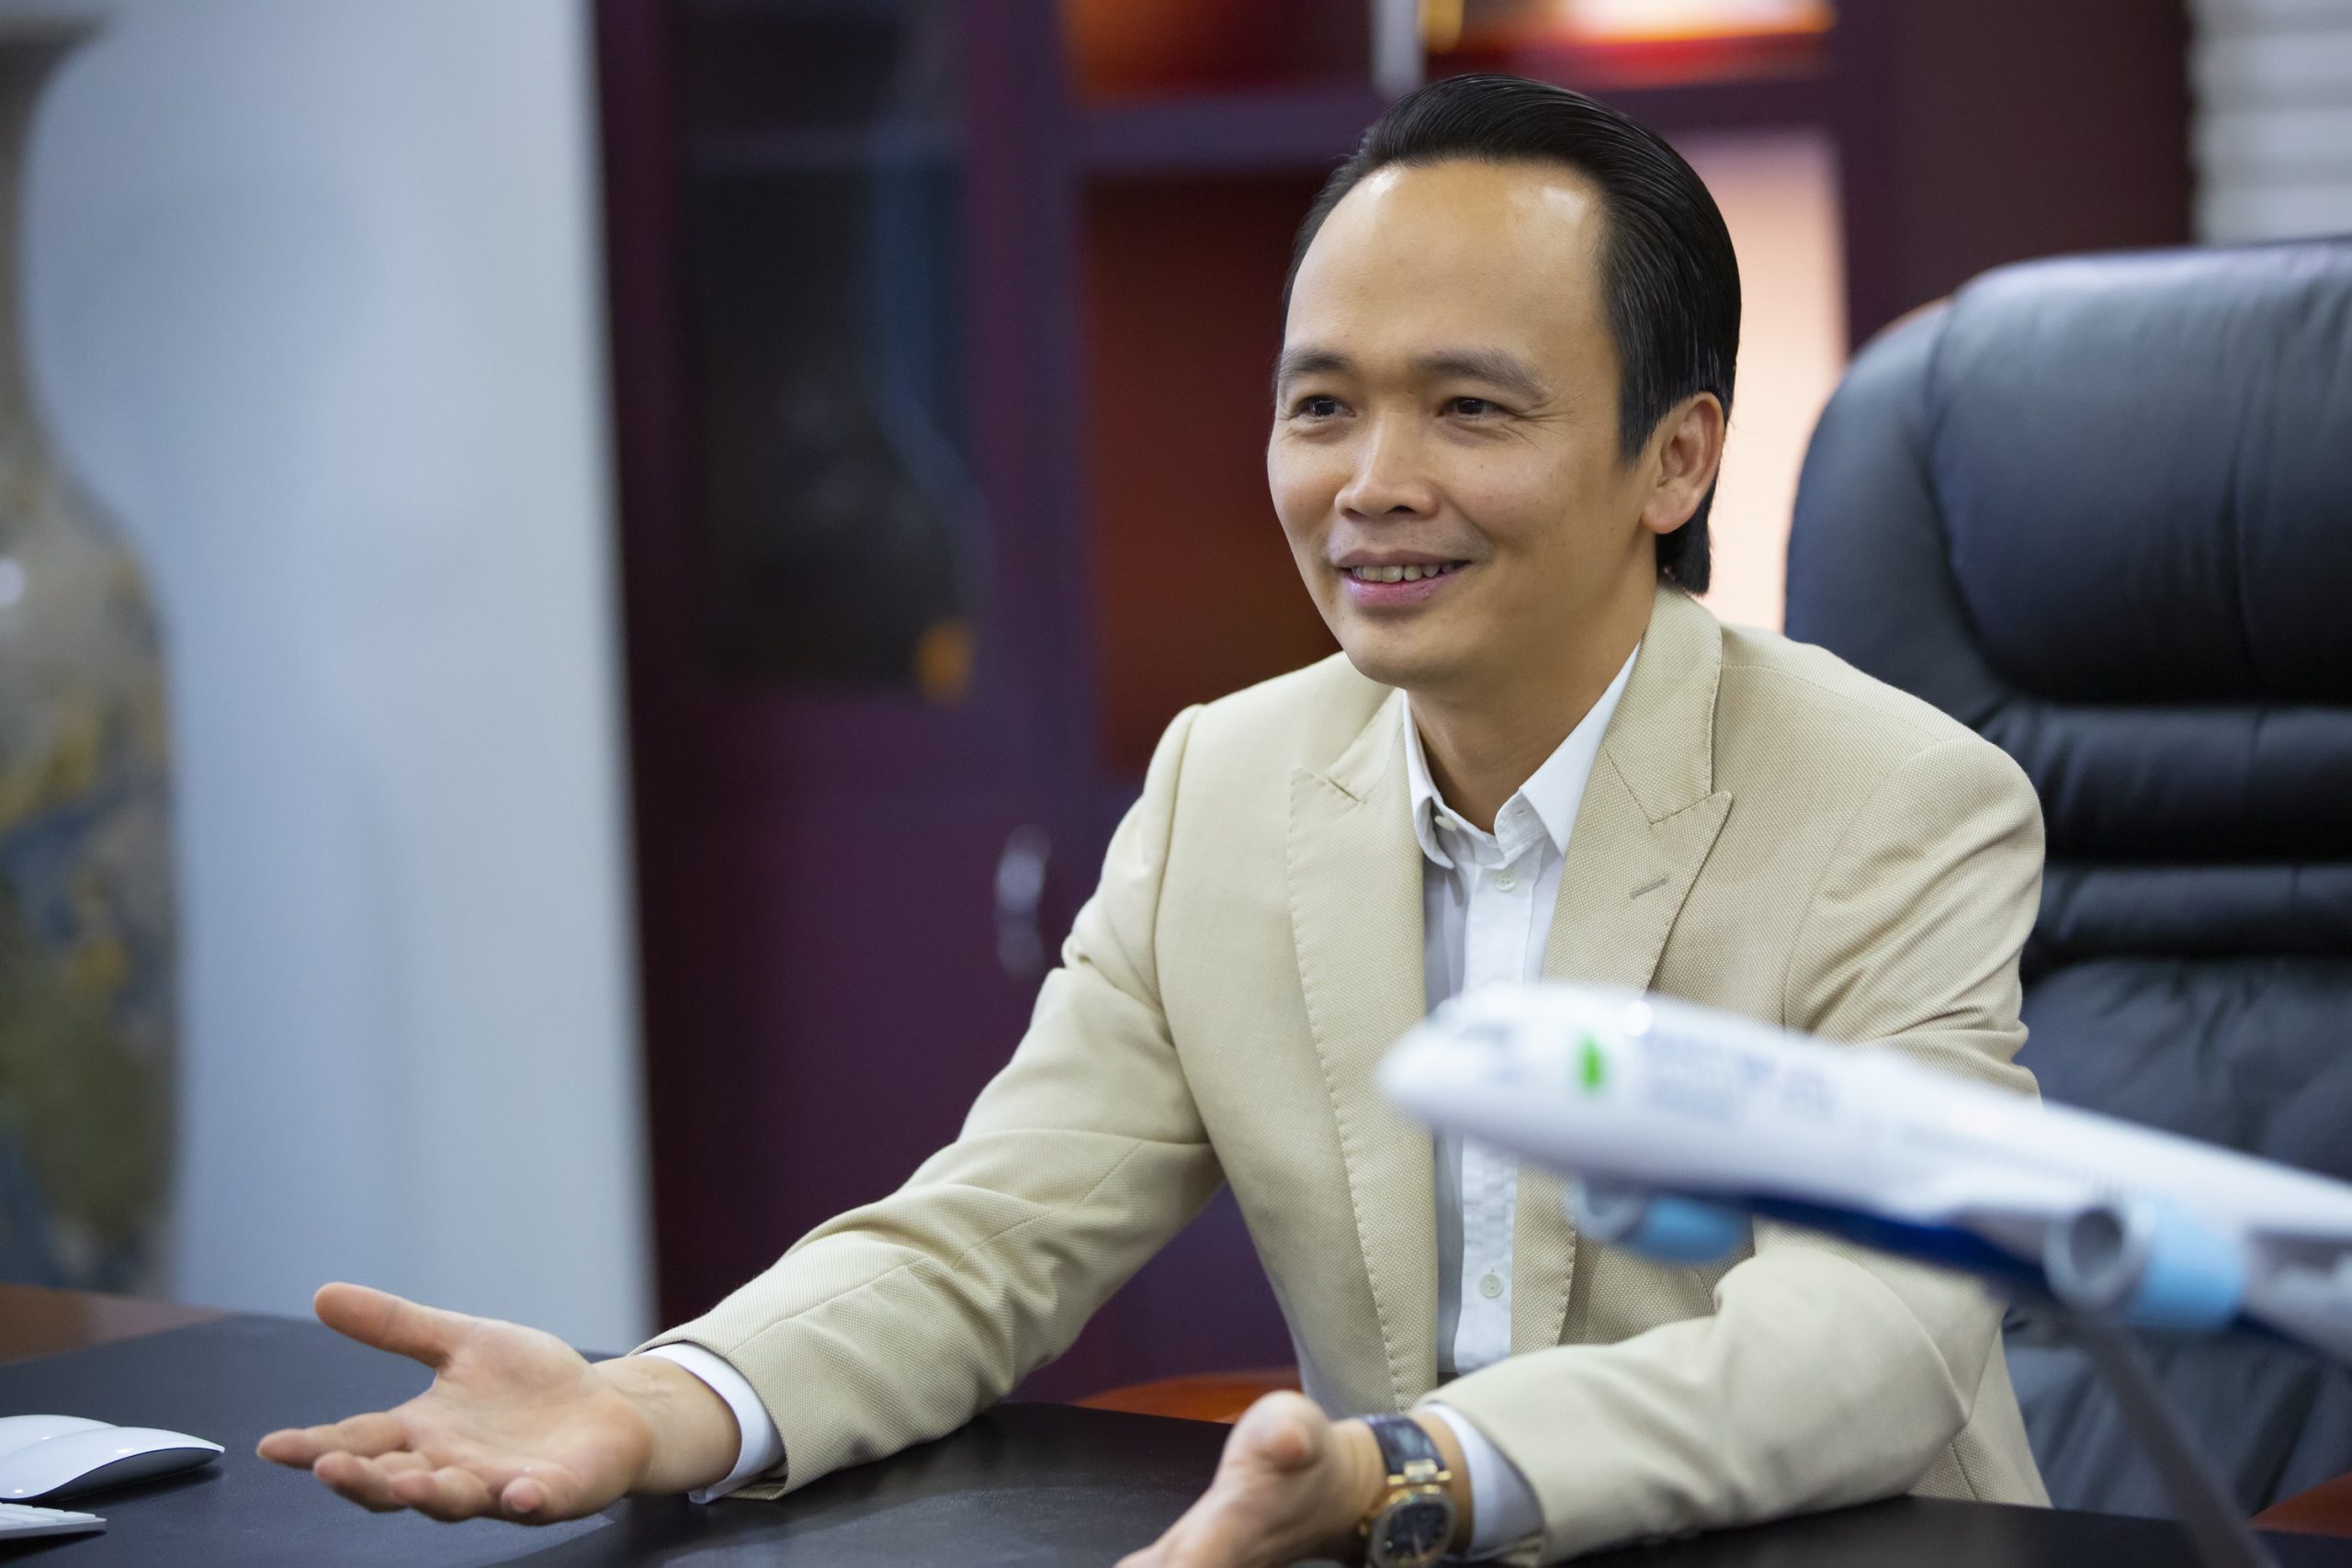 Hơn 15 triệu cổ phiếu của FLC sẽ được ông Trịnh Văn Quyết mua